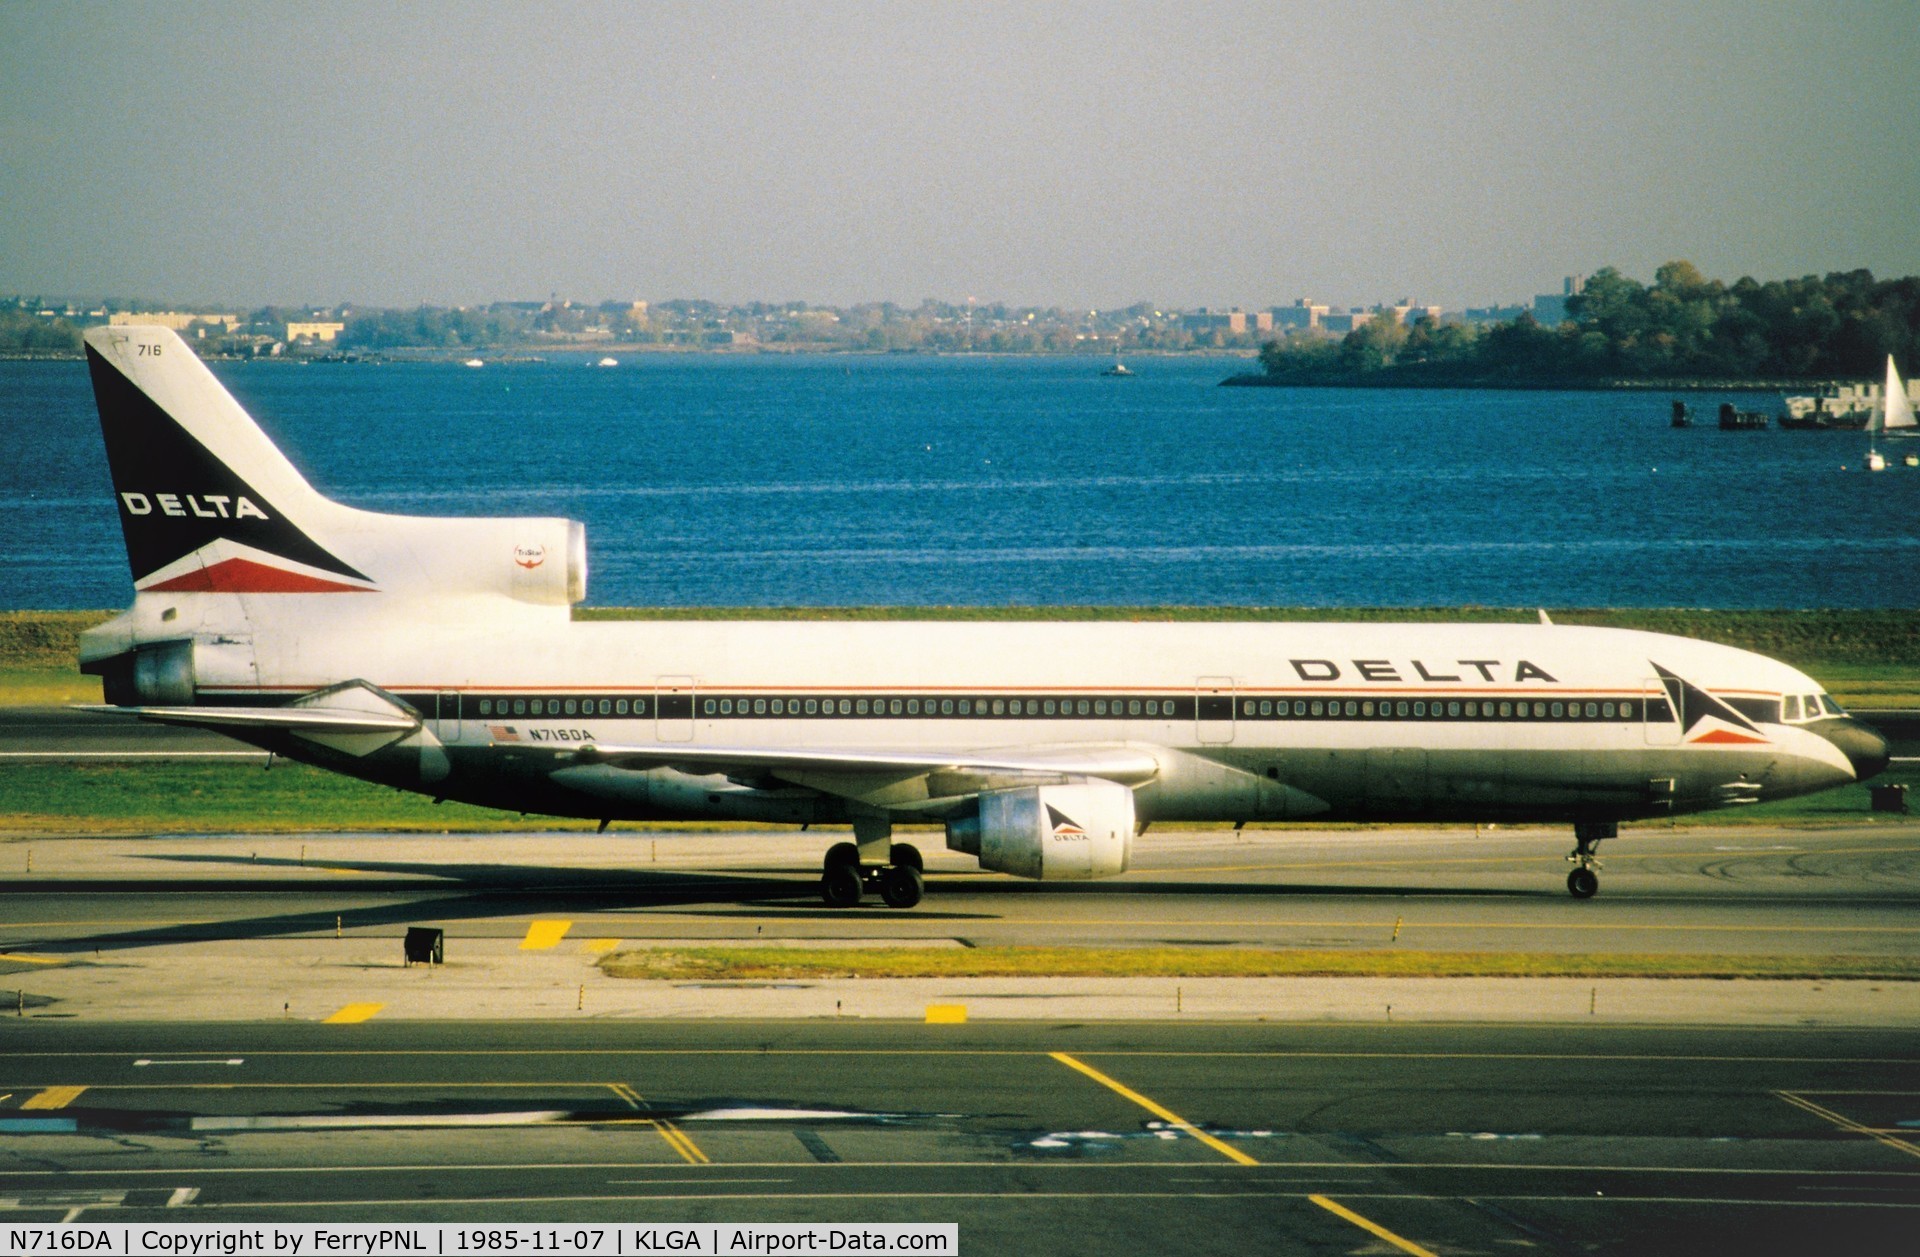 N716DA, 1974 Lockheed L-1011-385-1 TriStar 1 C/N 193C-1095, Delta TriStar taxying past